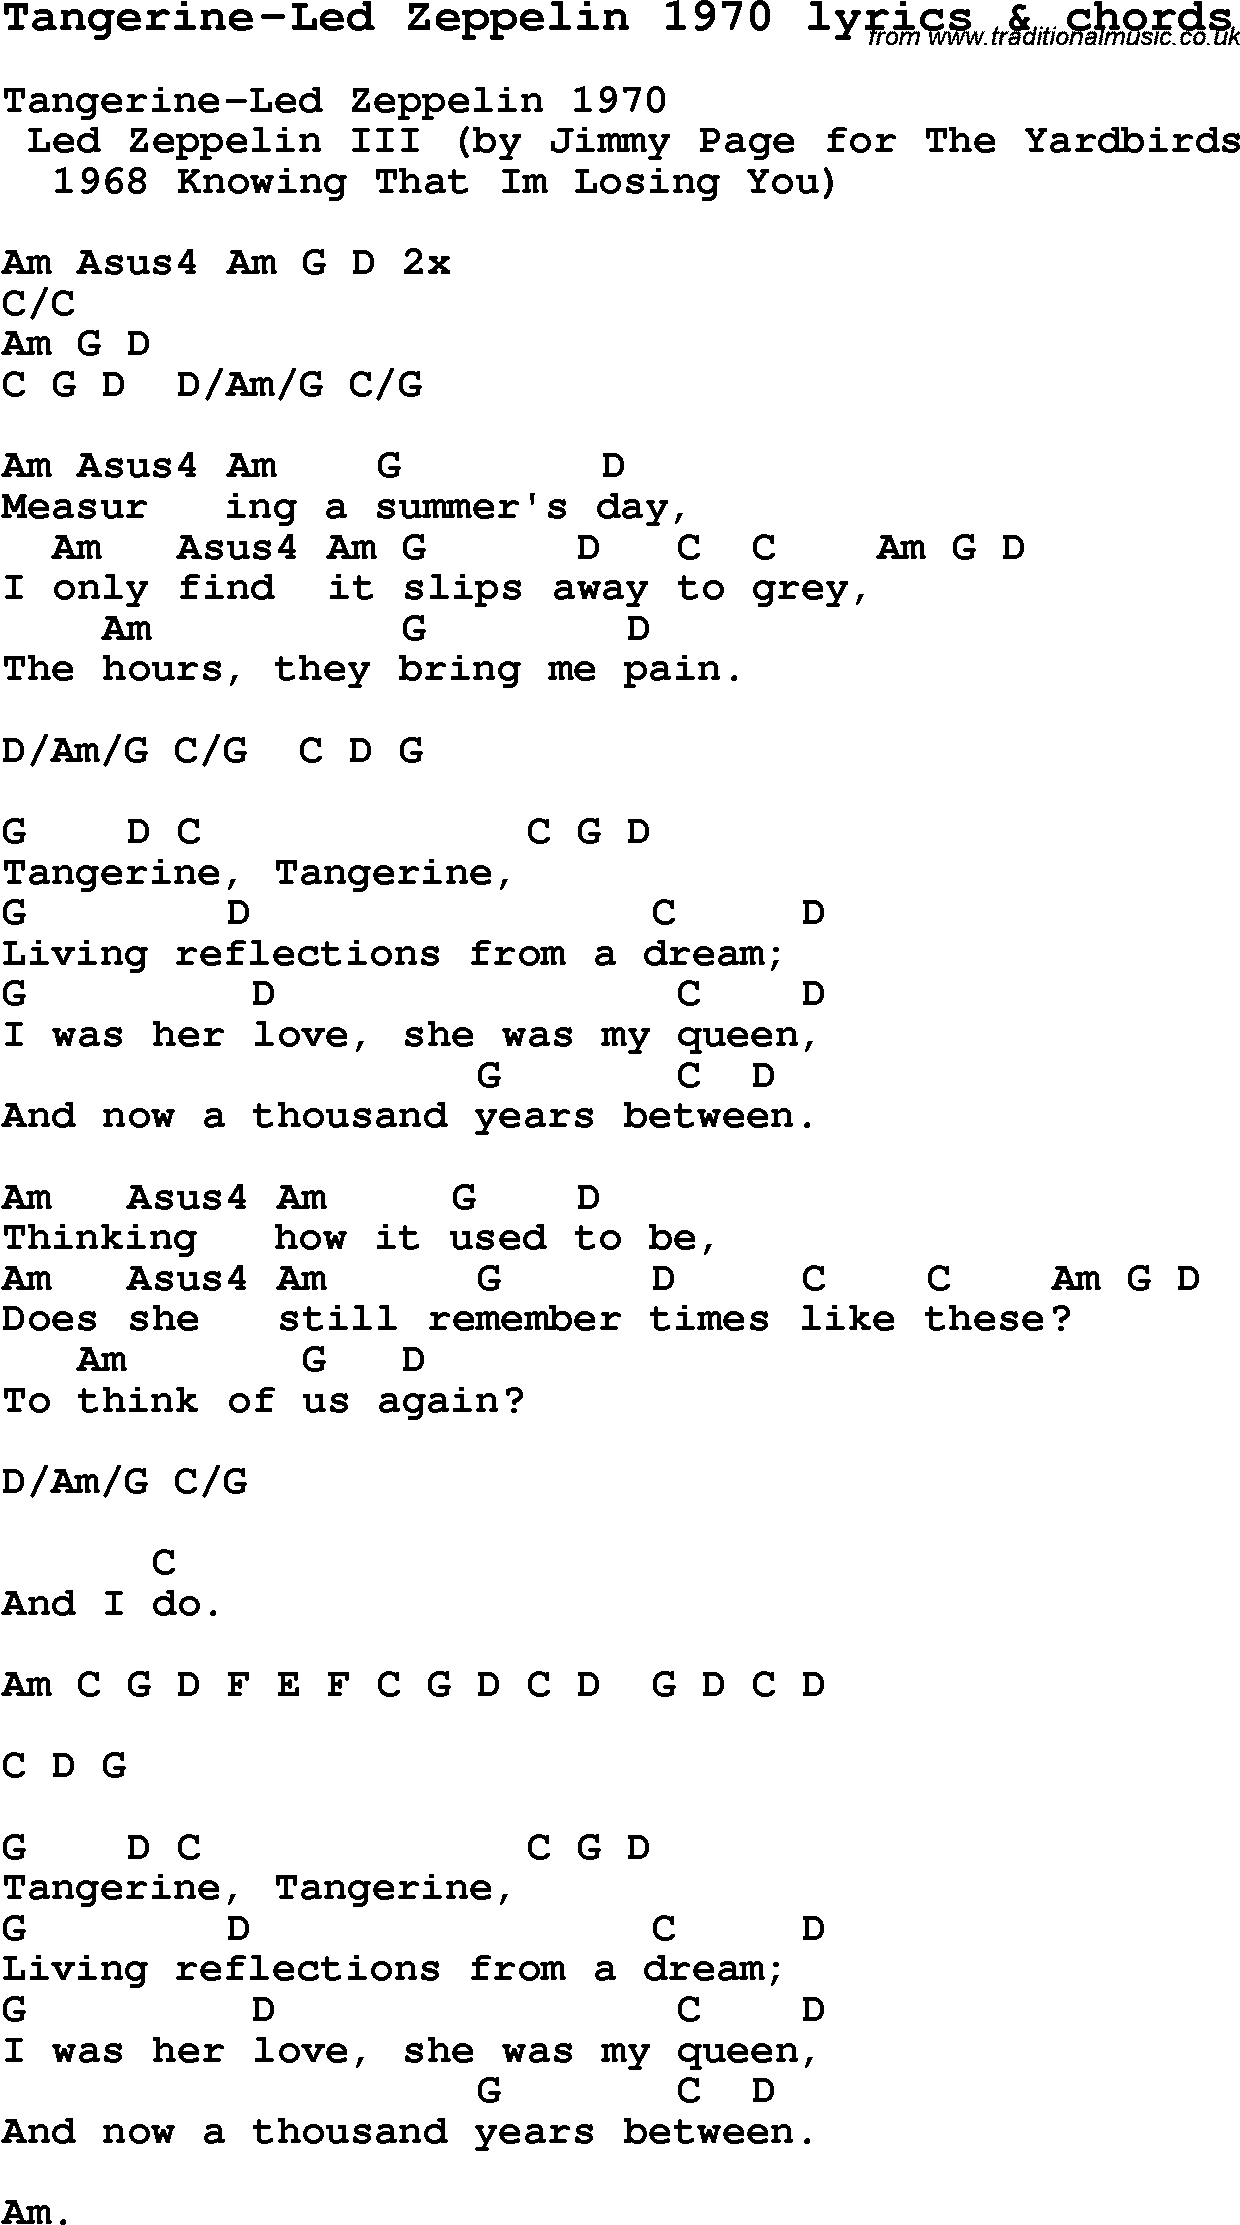 Love Song Lyrics for: Tangerine-Led Zeppelin 1970 with chords for ...